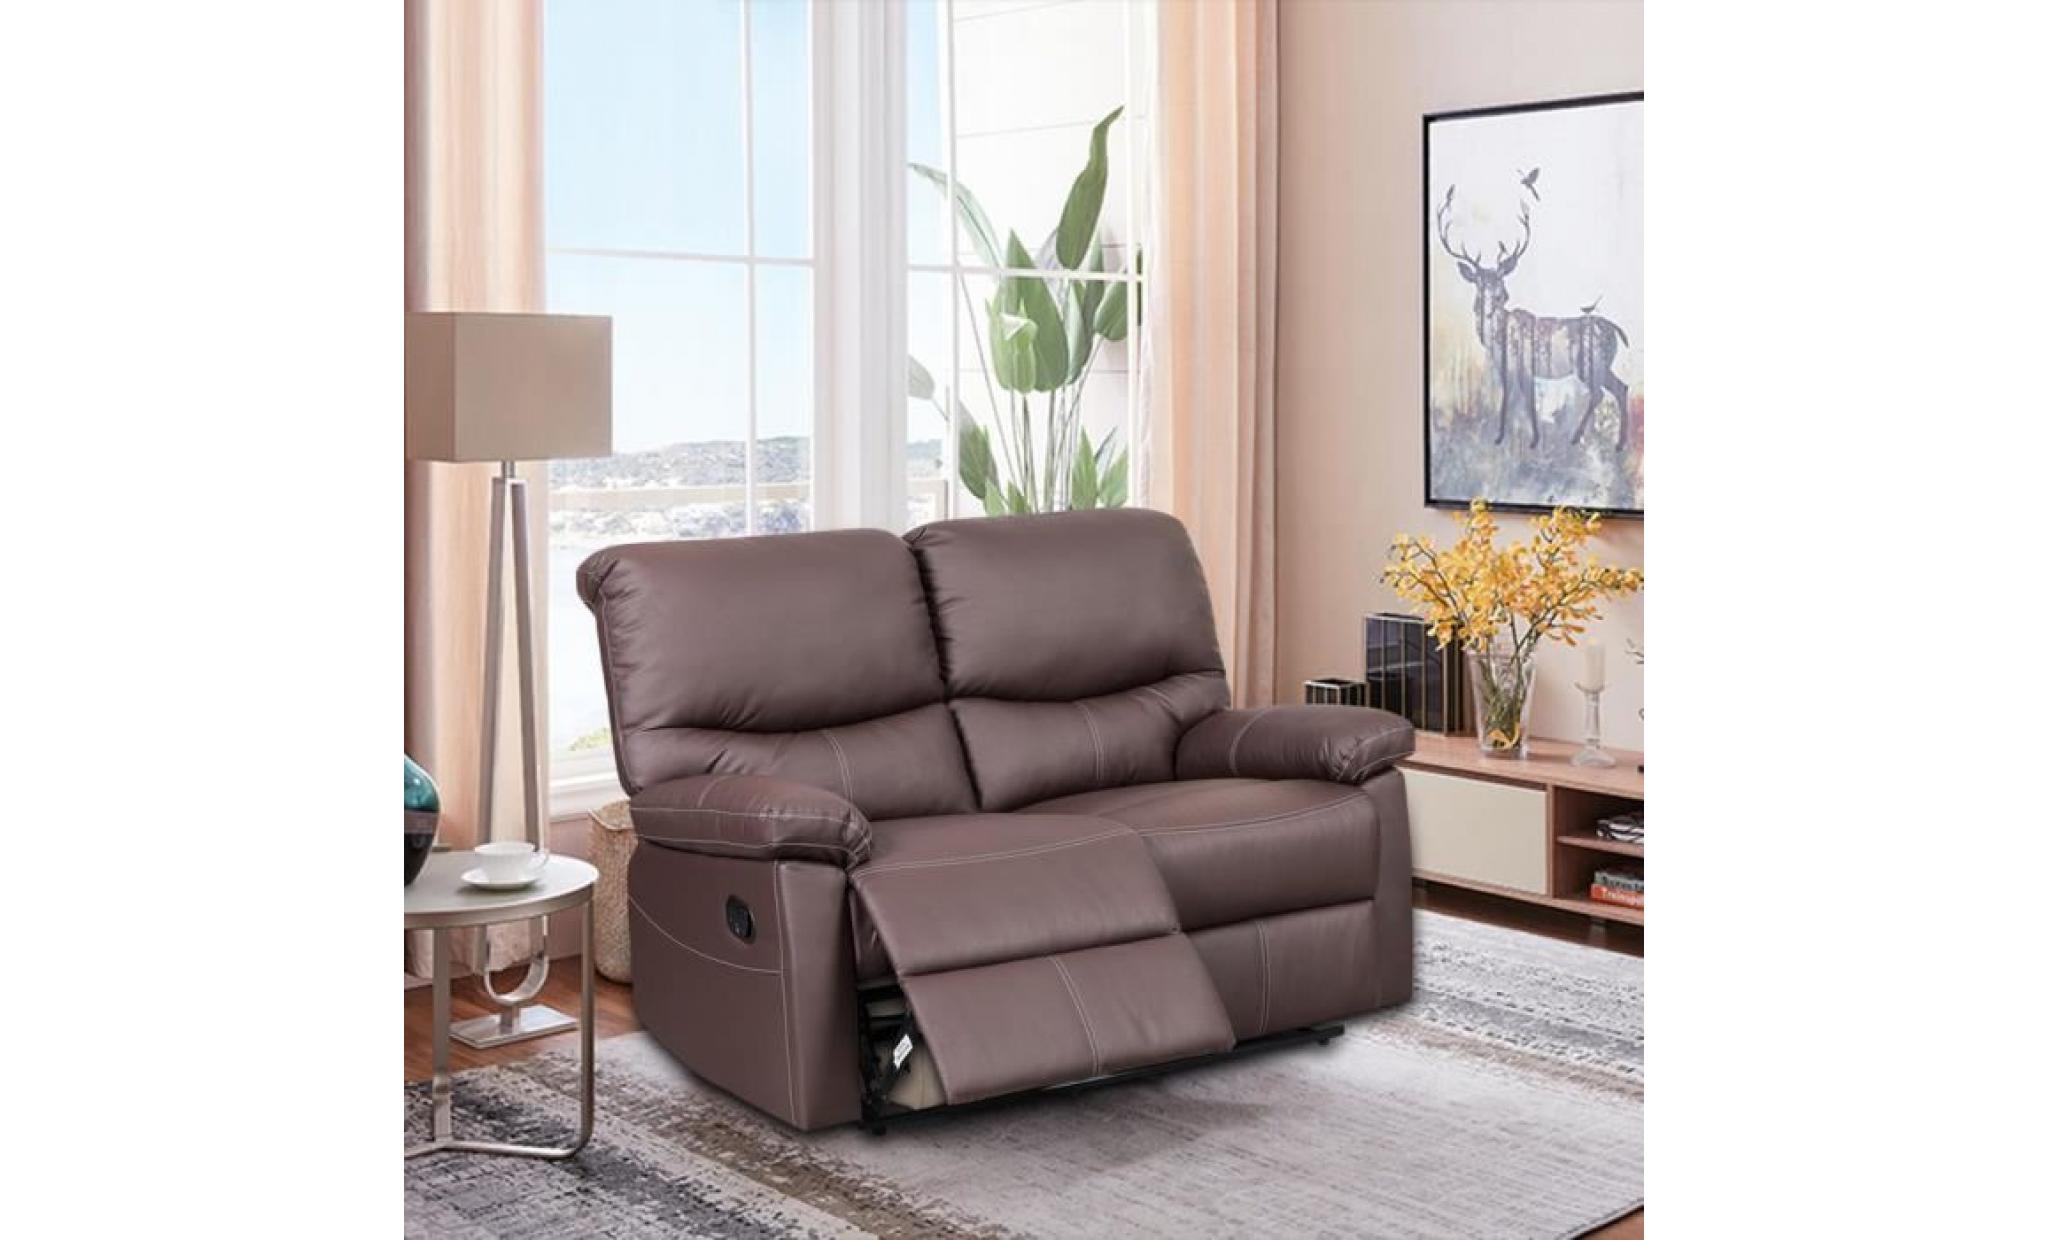 double siège canapé confortable fauteuil de bureau   à domicile scandinave marron